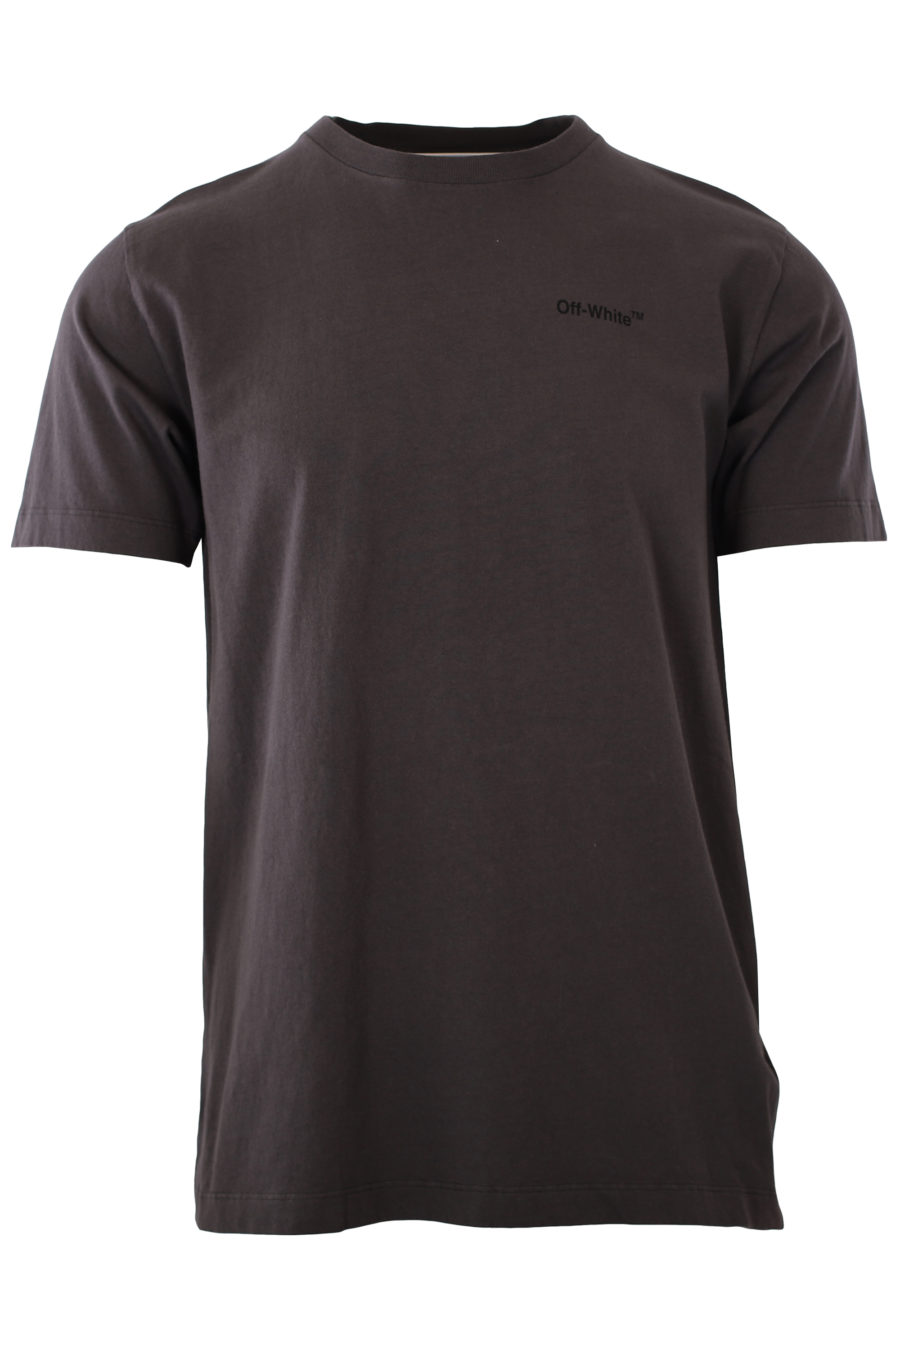 Camiseta gris con logo grande negro - IMG 2345